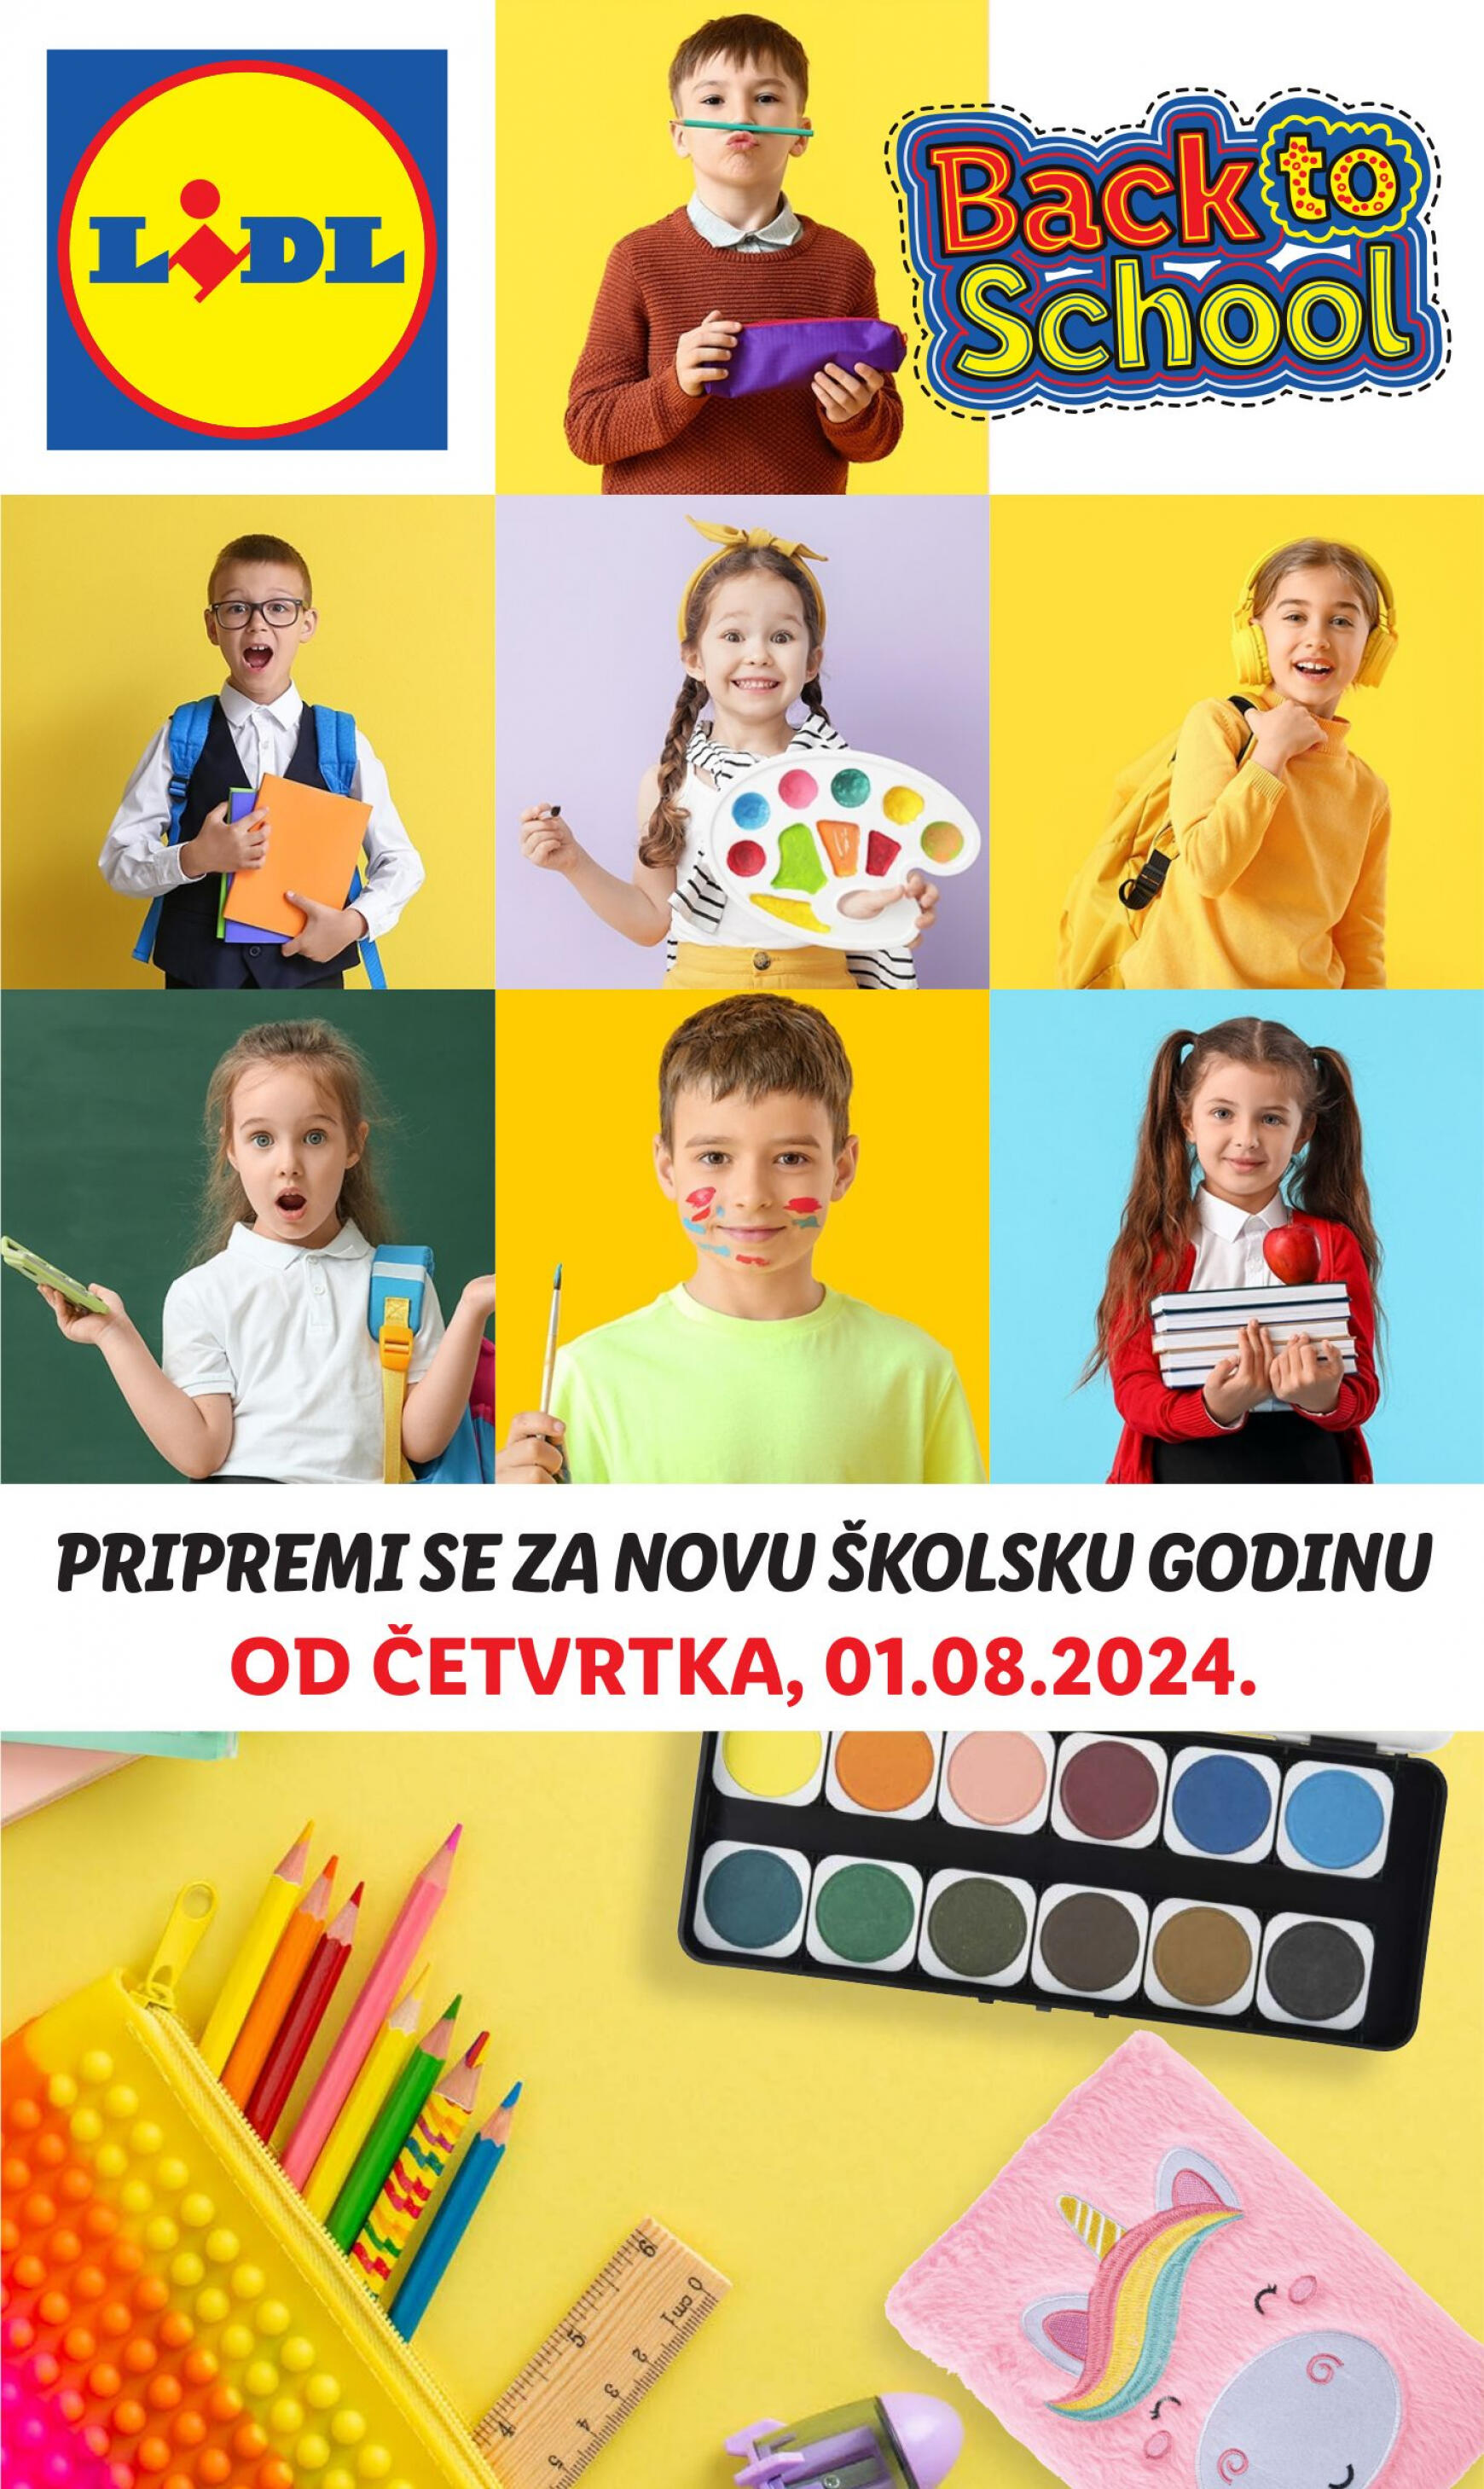 lidl - Novi katalog Lidl - Pripremi se za novu školsku godinu 01.08. - 30.09.